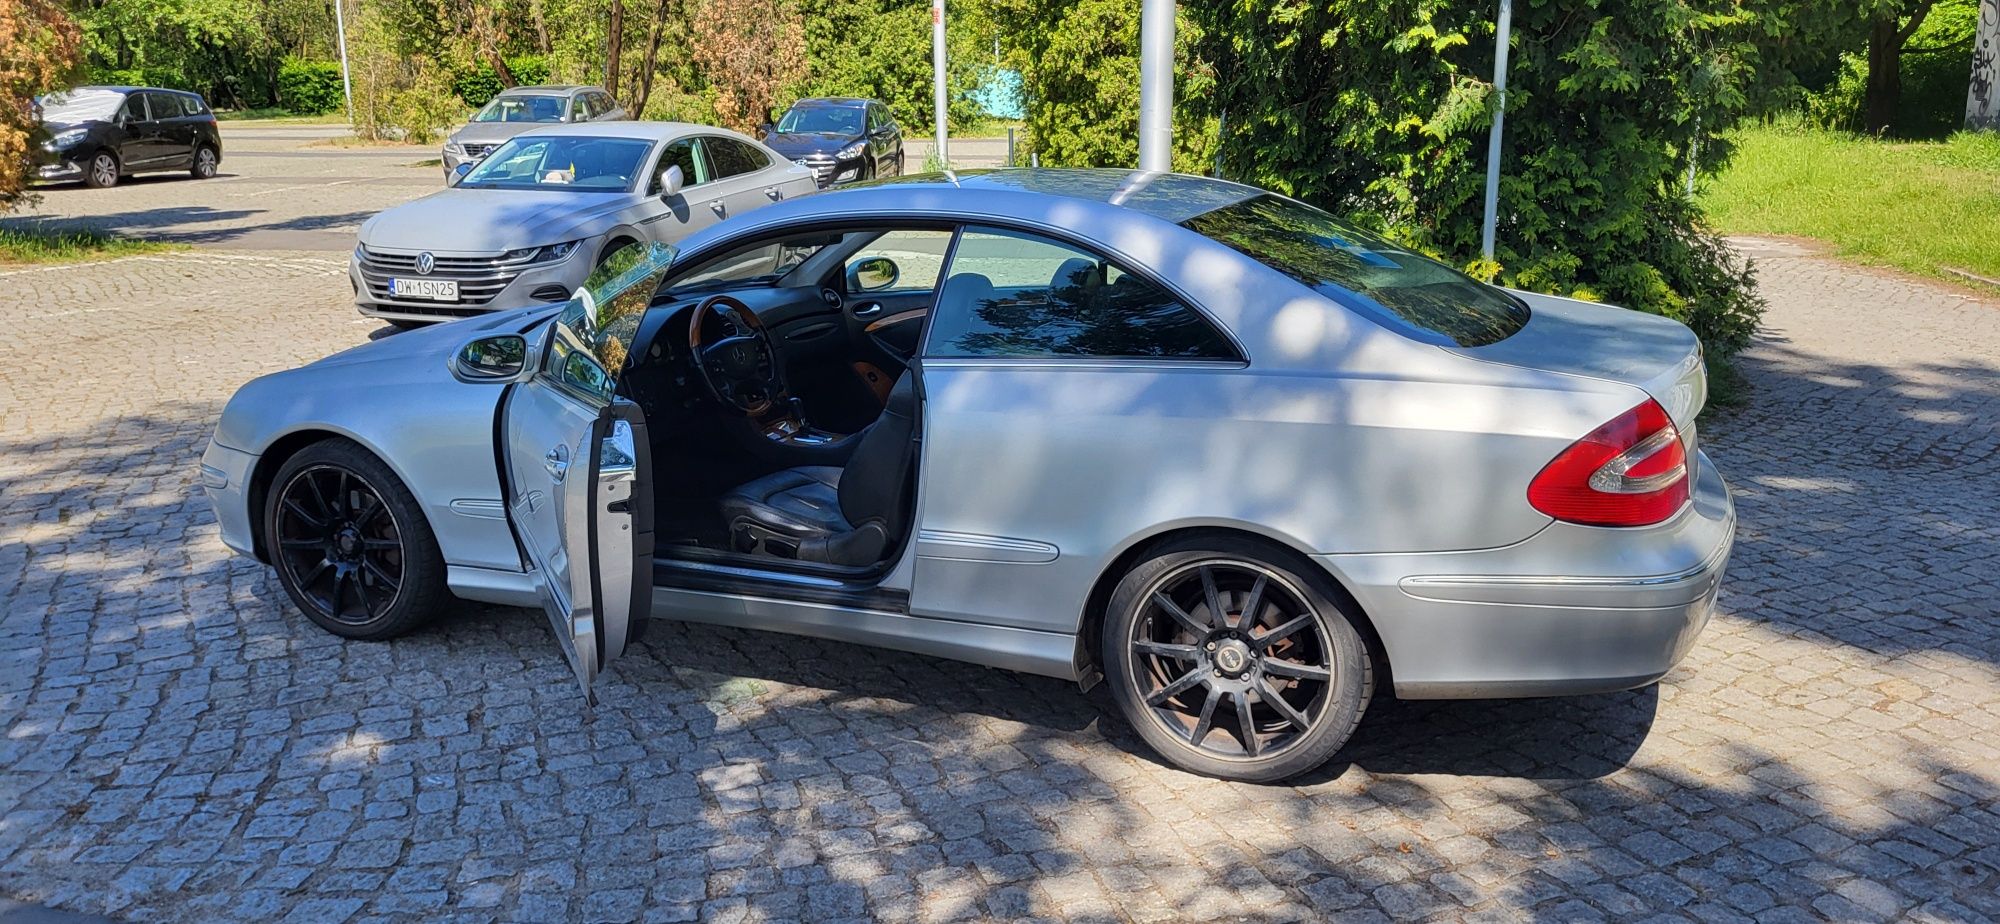 Mercedes clk w209 270cdi Wrocław